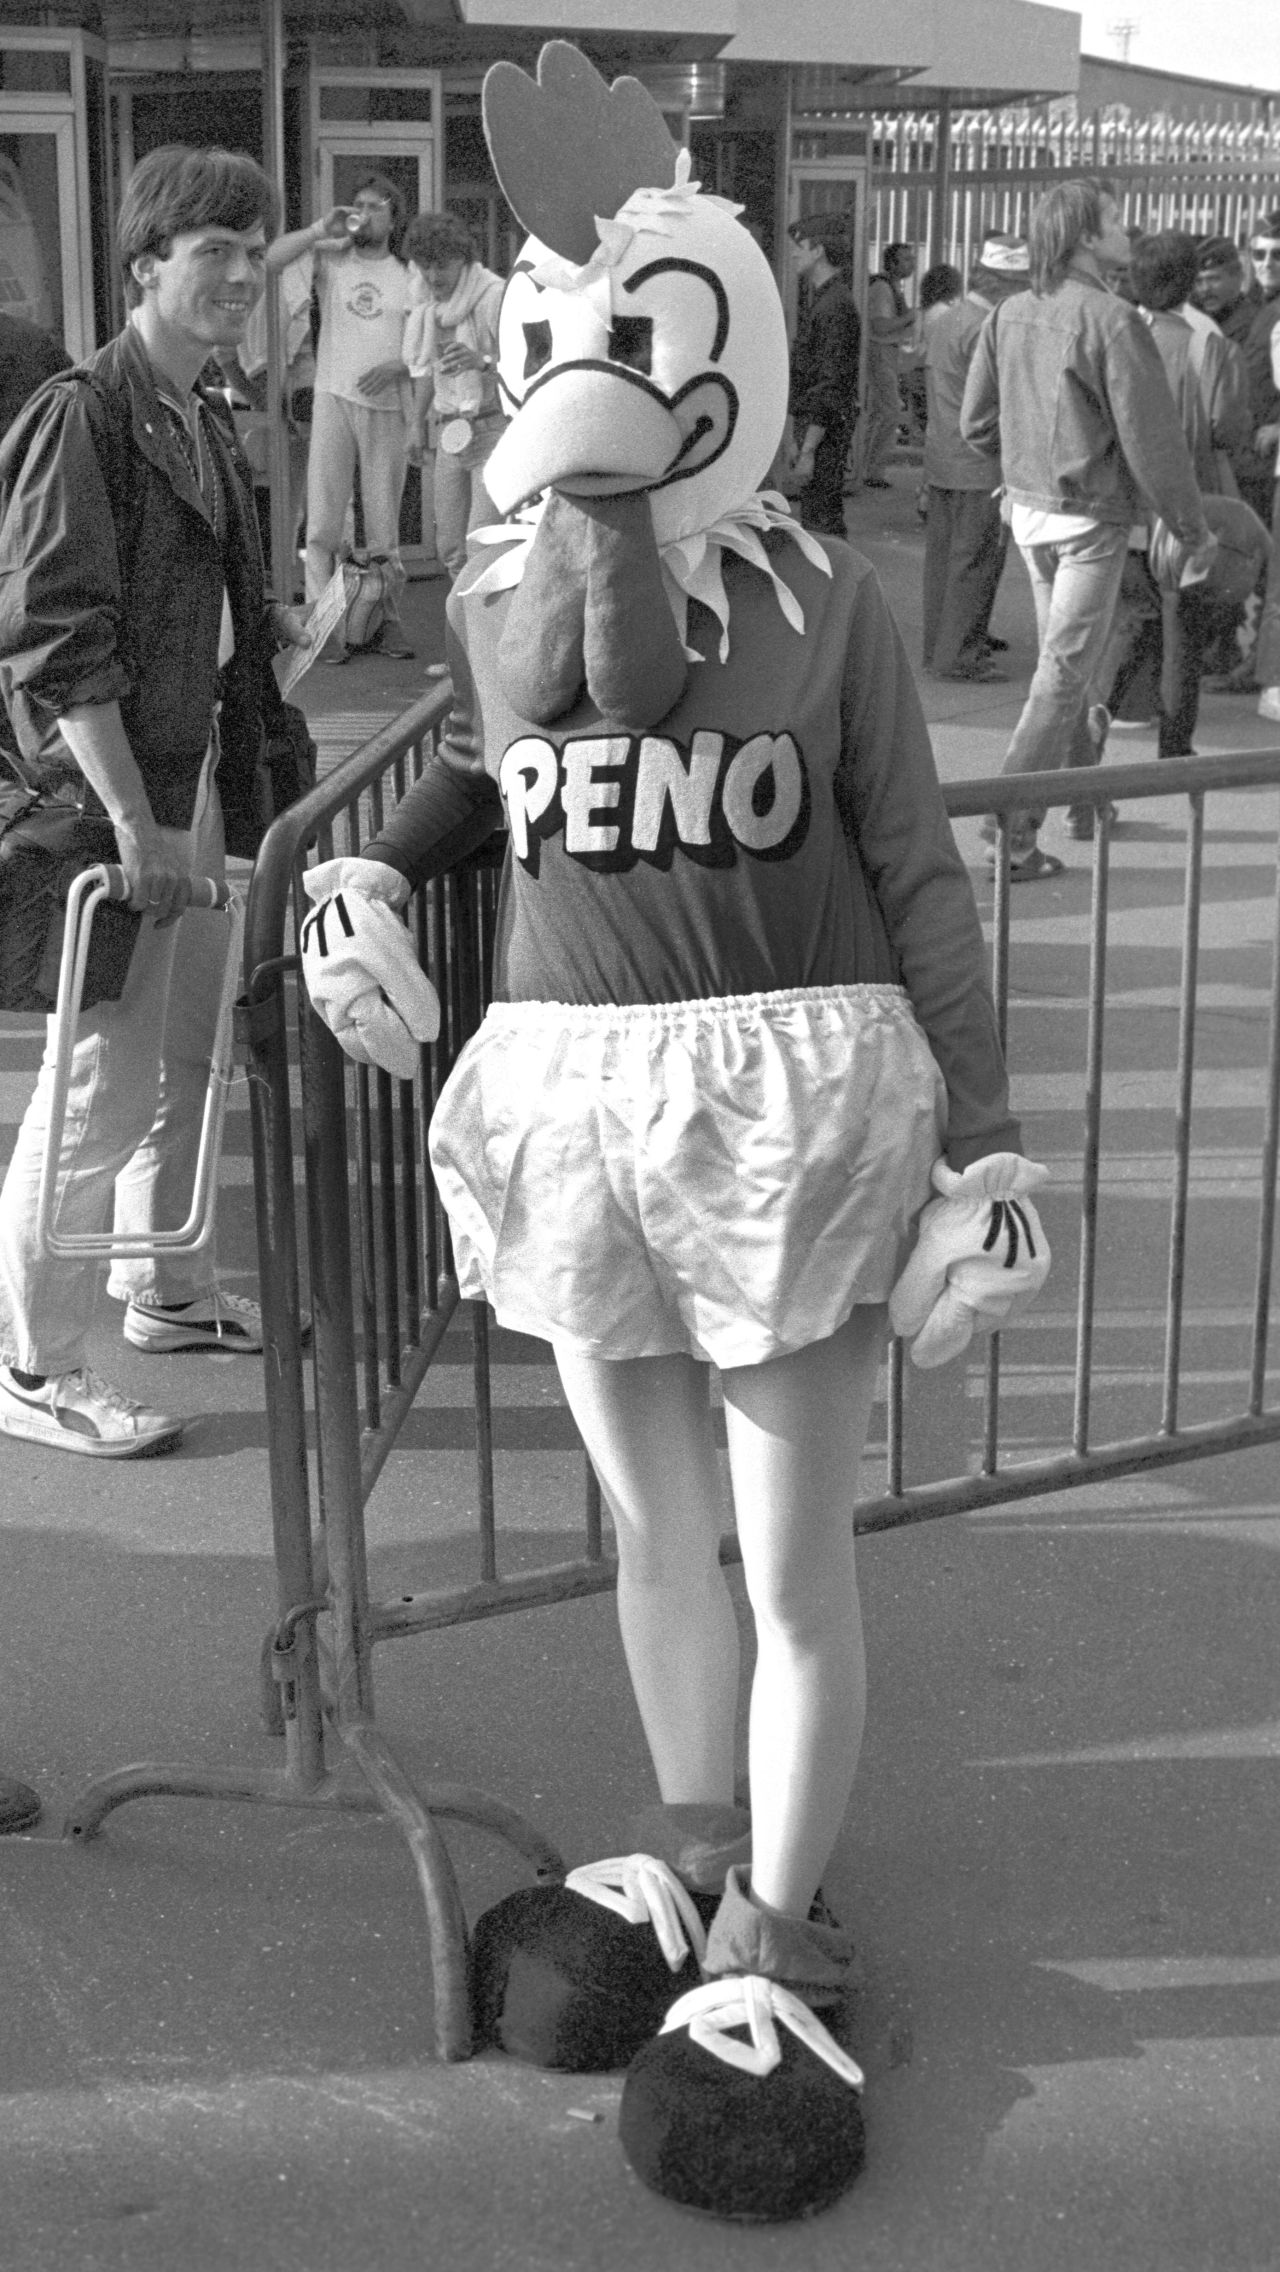 Евро-1984 во Франции – Пено